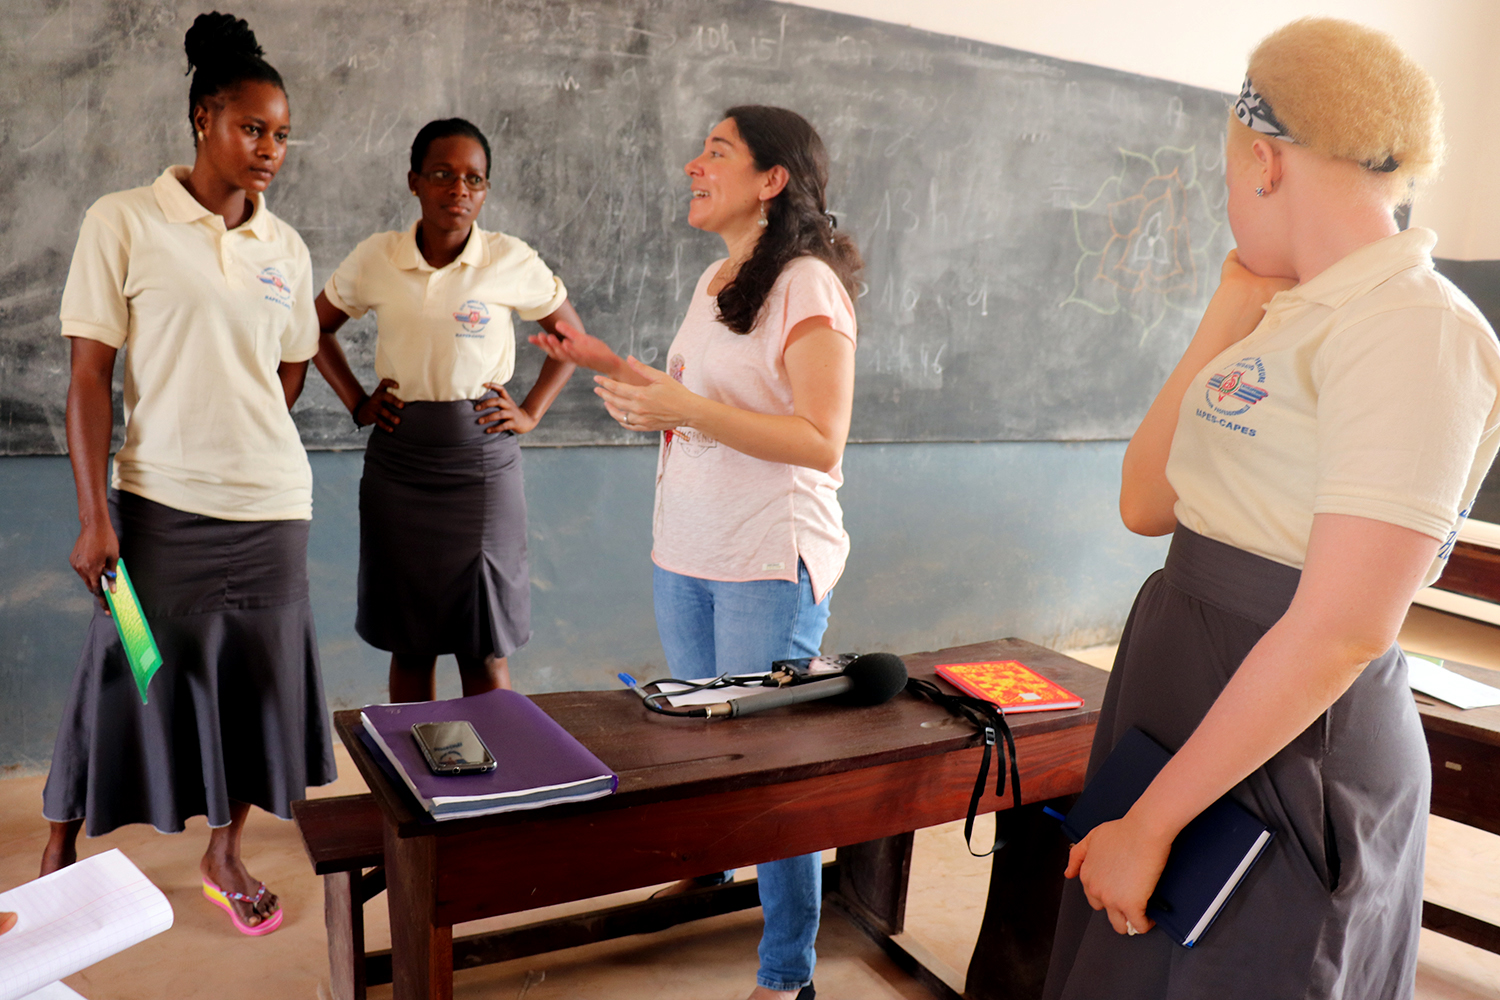 L’interview avec Renauld GBETOWENONMON a lieu dans une salle de classe inoccupée. Tatiana est en compagnie d’un groupe d’étudiants de l’École Normale Supérieure, tous volontaires, pour répondre globe-reporters. 